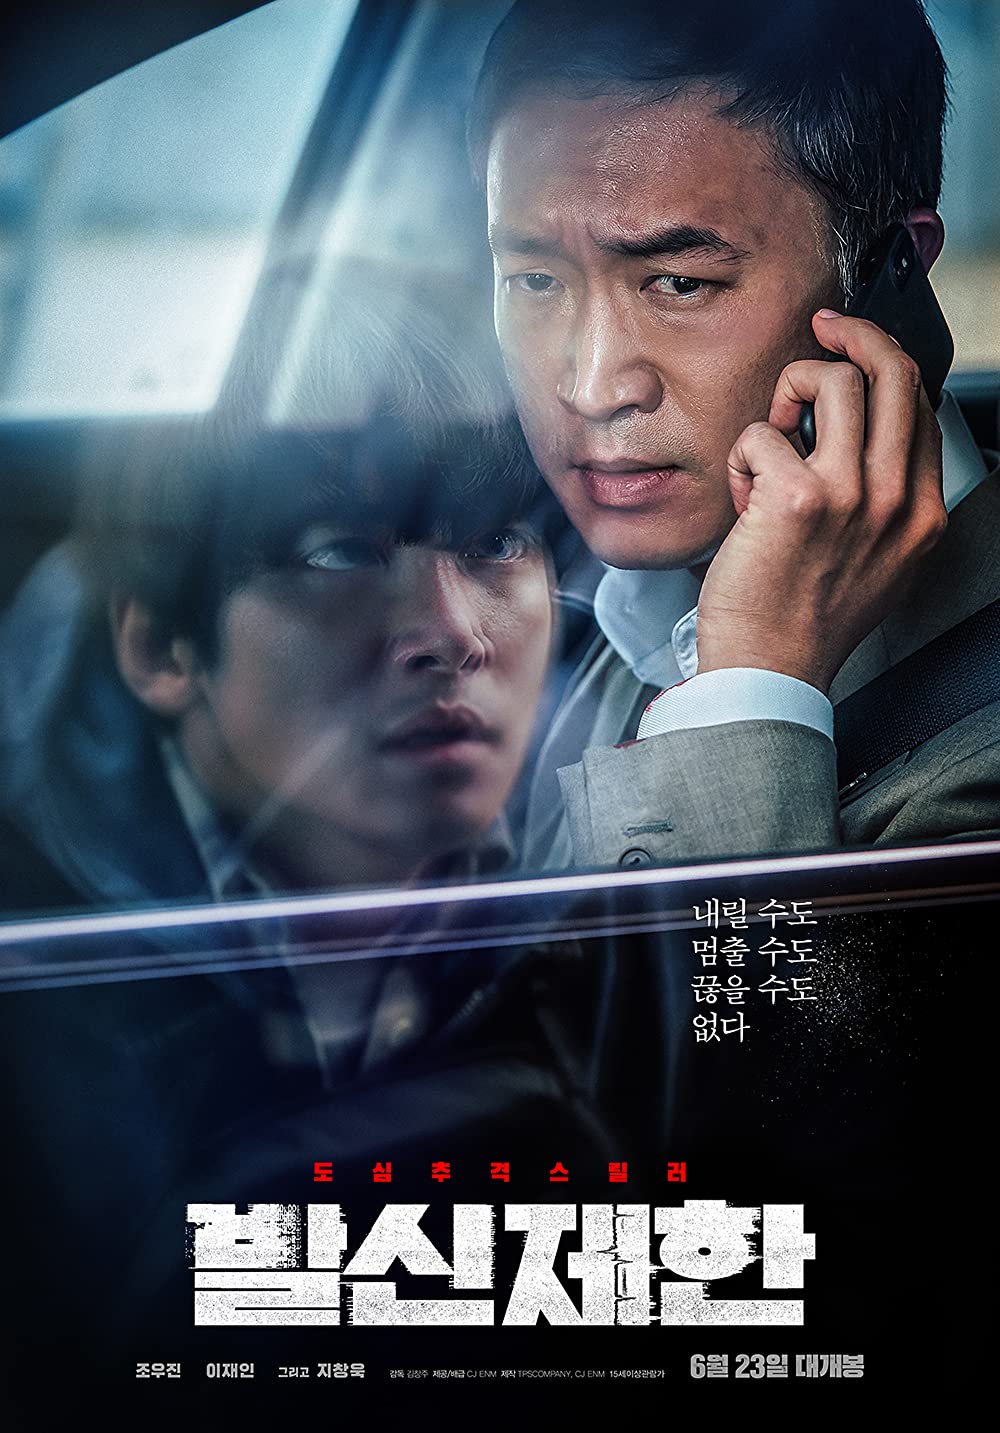 11 Rekomendasi film Korea thriller, penuh aksi seru dan menegangkan